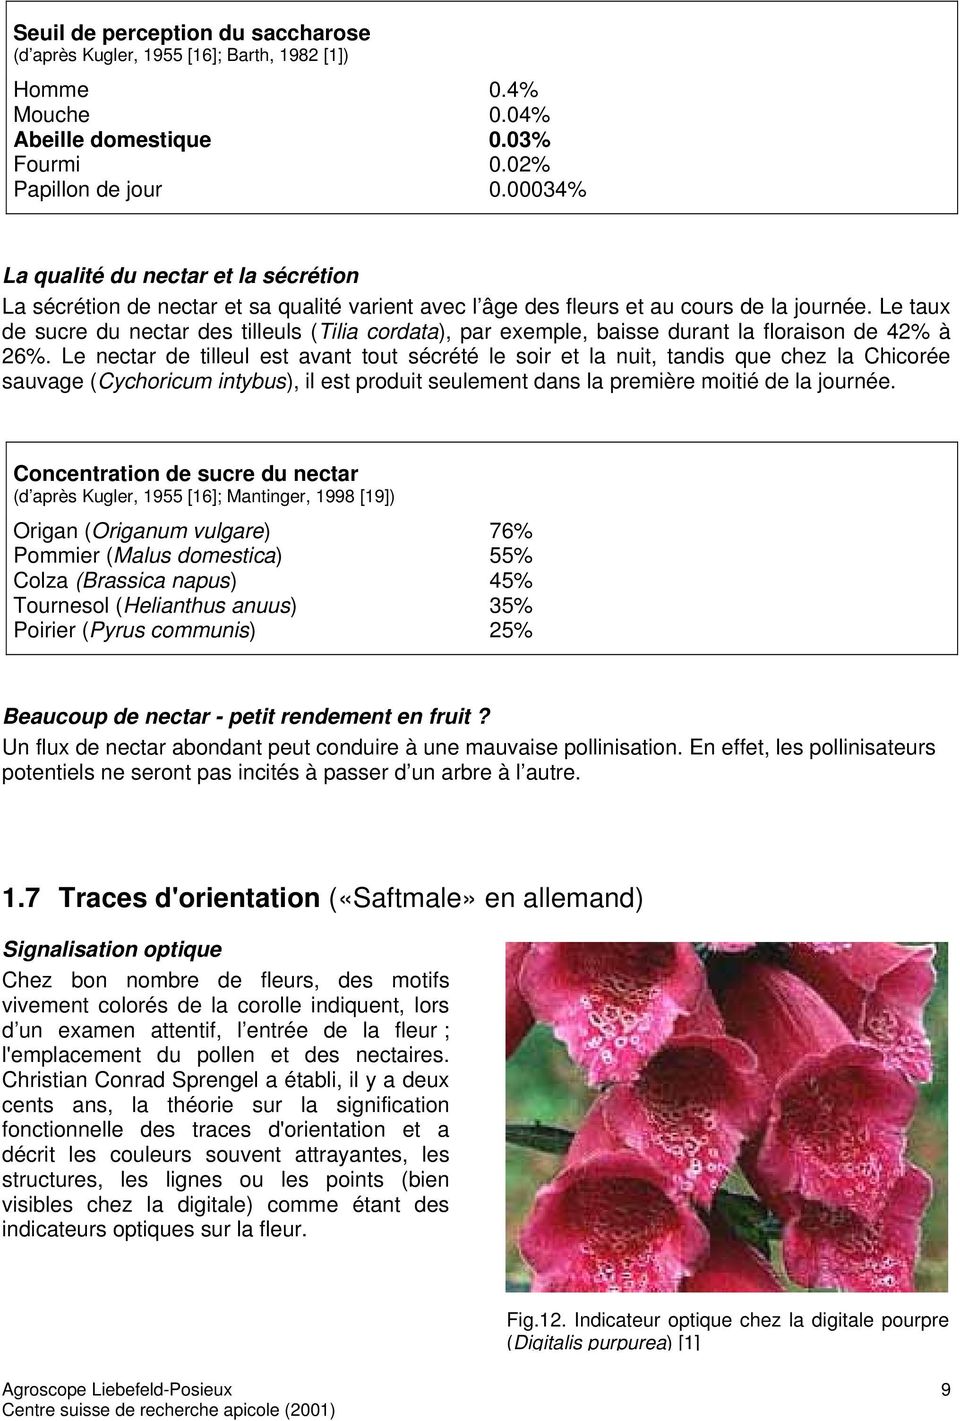 Le taux de sucre du nectar des tilleuls (Tilia cordata), par exemple, baisse durant la floraison de 42% à 26%.